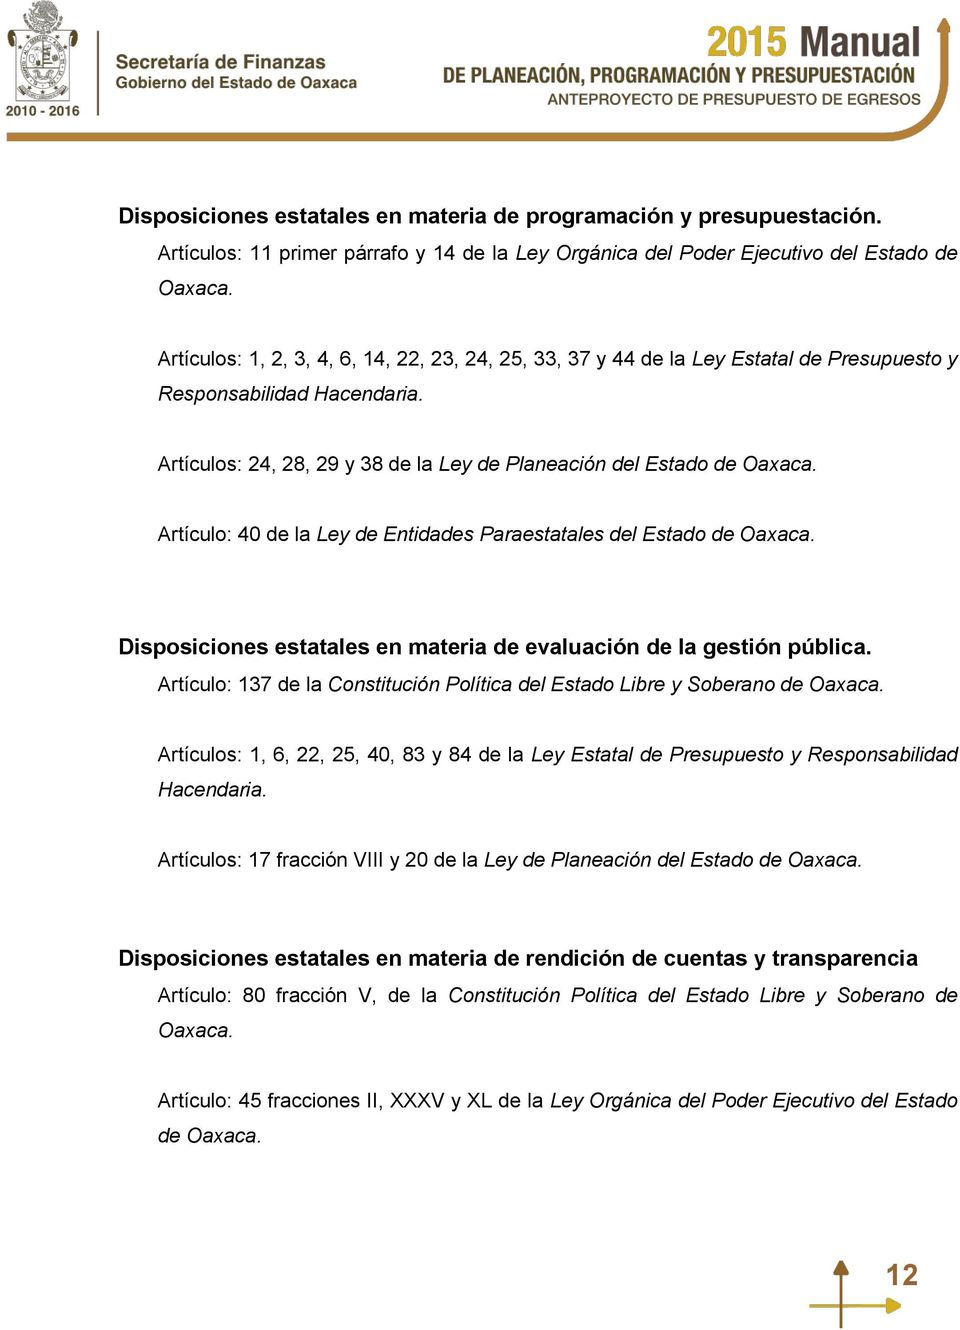 Artículo: 40 de la Ley de Entidades Paraestatales del Estado de Oaxaca. Disposiciones estatales en materia de evaluación de la gestión pública.